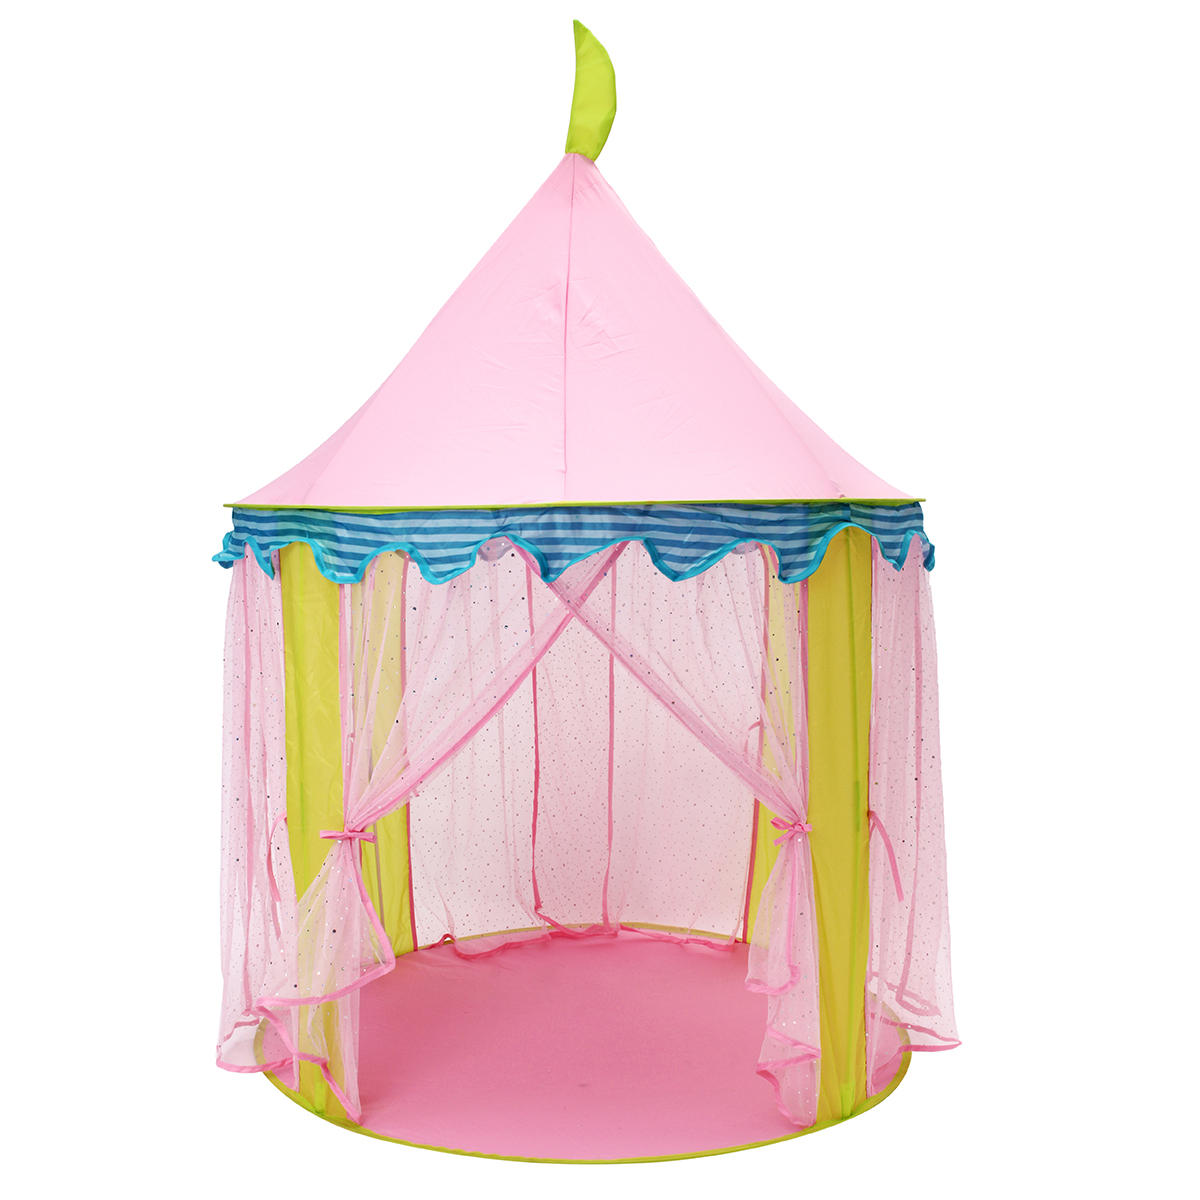 Protable Kids Różowy Princess Tent Składany domek dla dzieci House Kids Mosquito Large Game Room